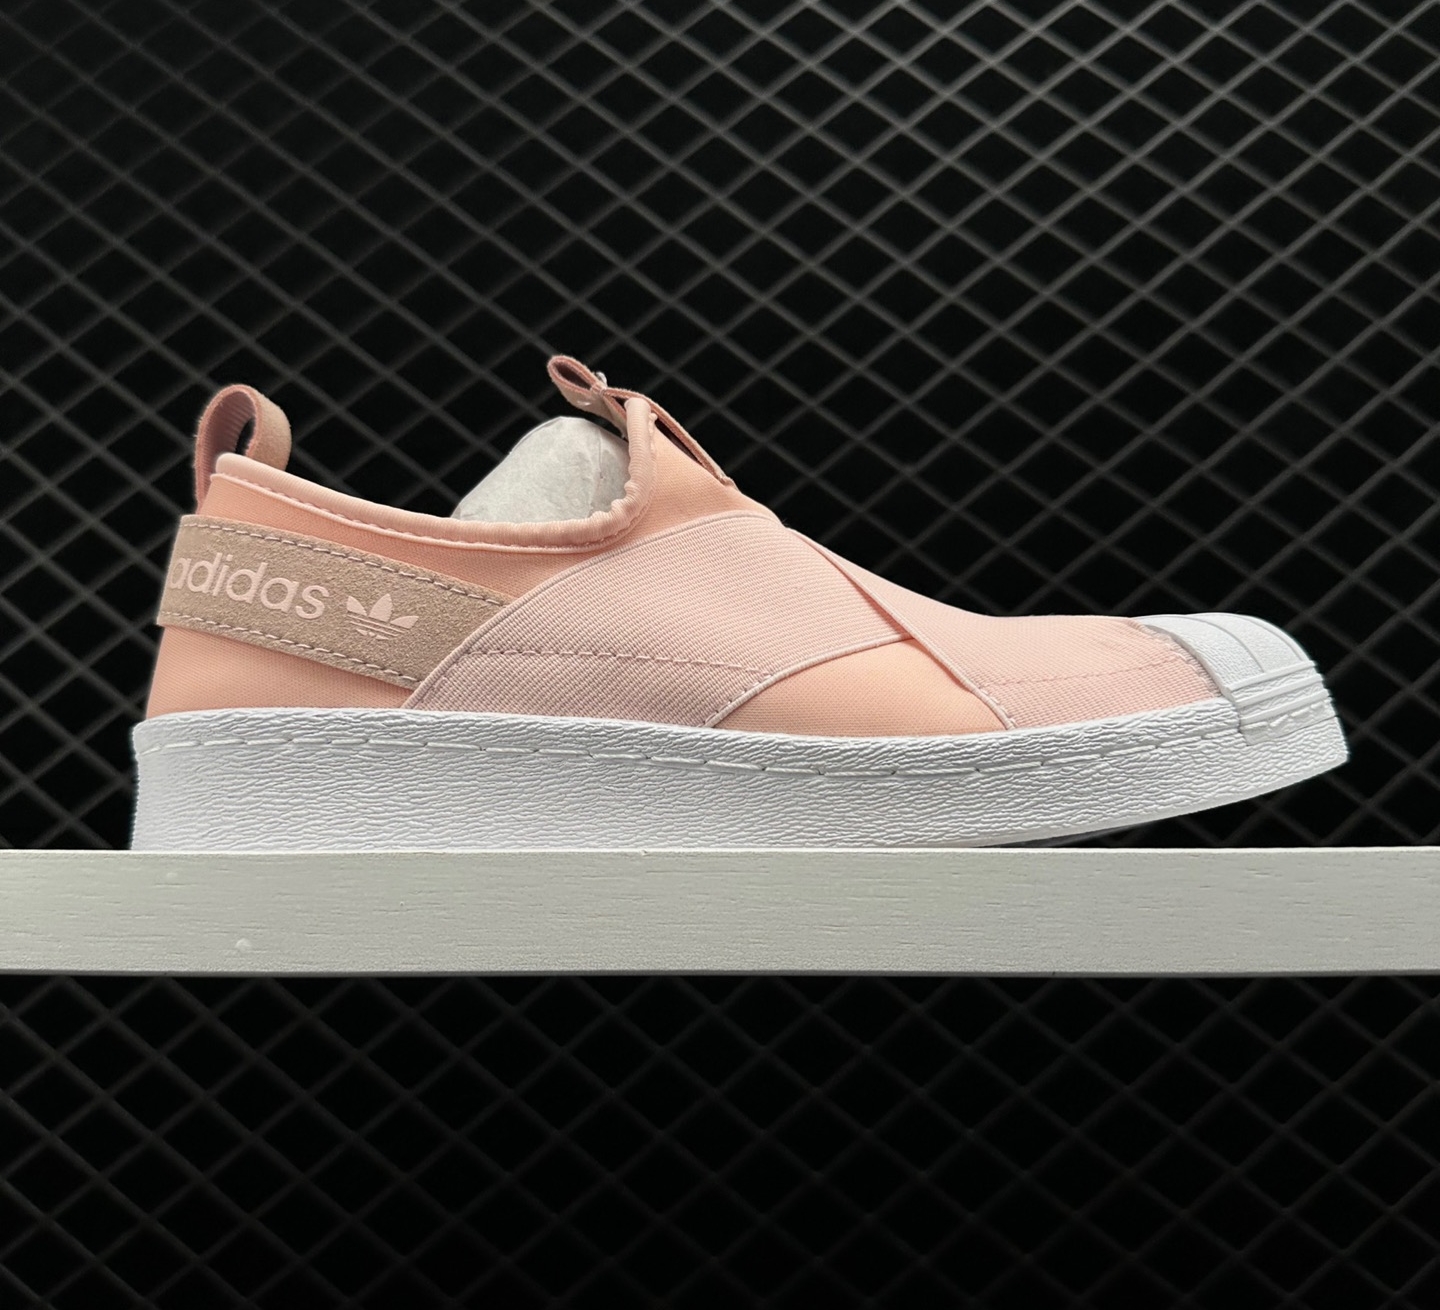 Adidas Originals Superstar Slip On Pink White S76408 - Shop Now!